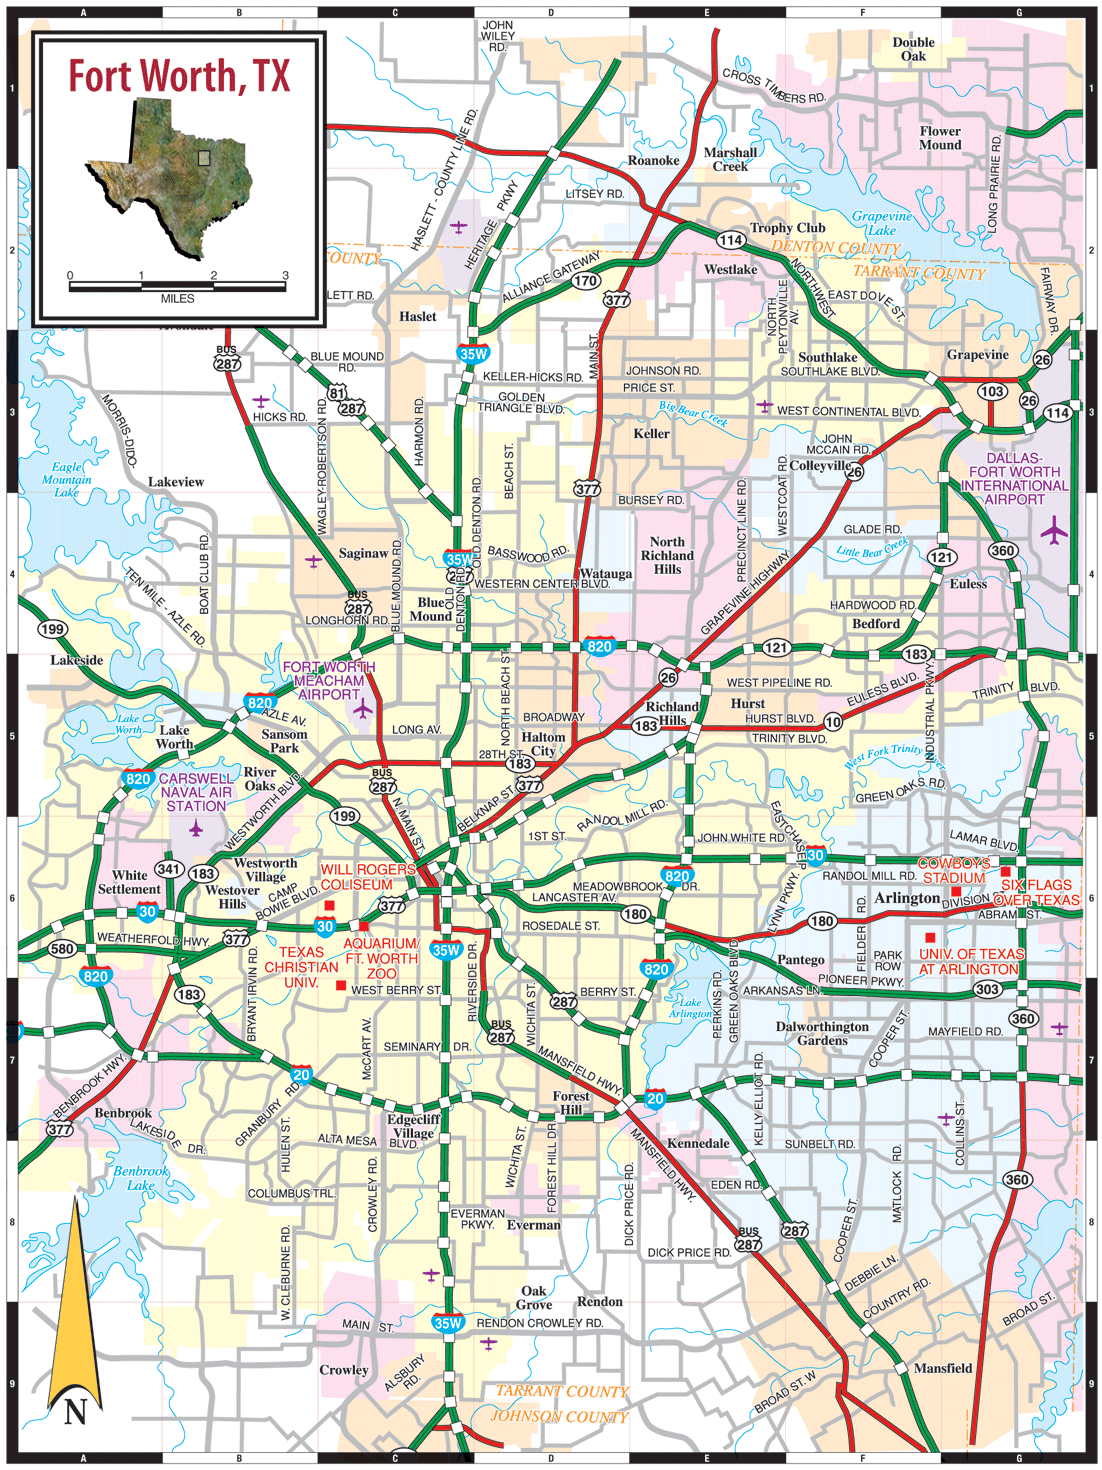 Dallasfort Worth Map 1 